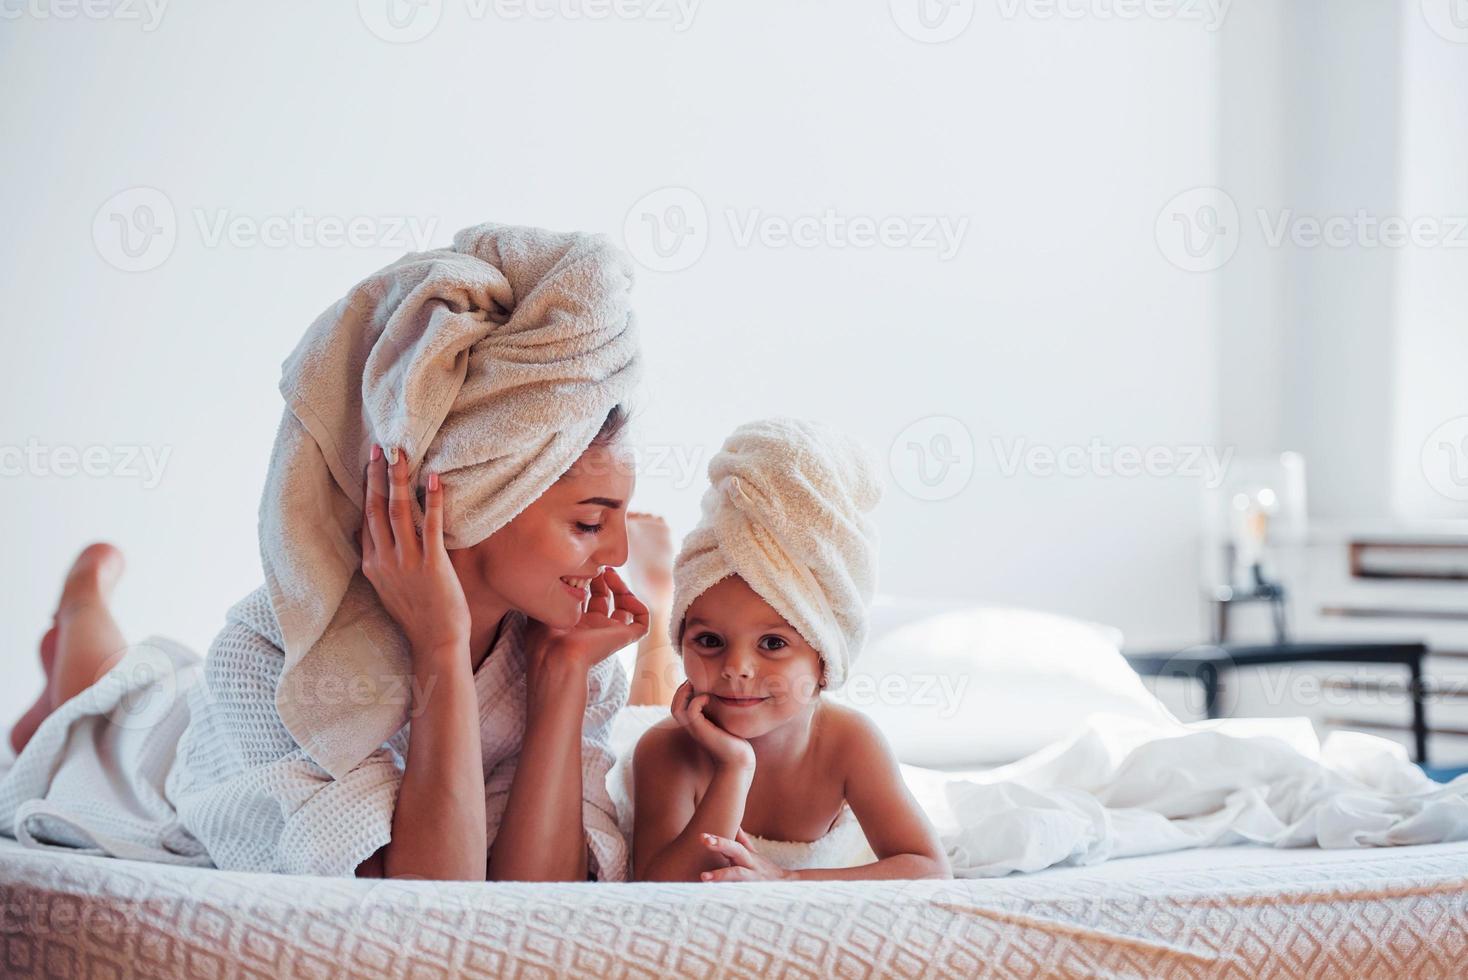 acostados juntos en una cama blanca. la joven madre con su hija tiene un día de belleza en el interior de la habitación foto